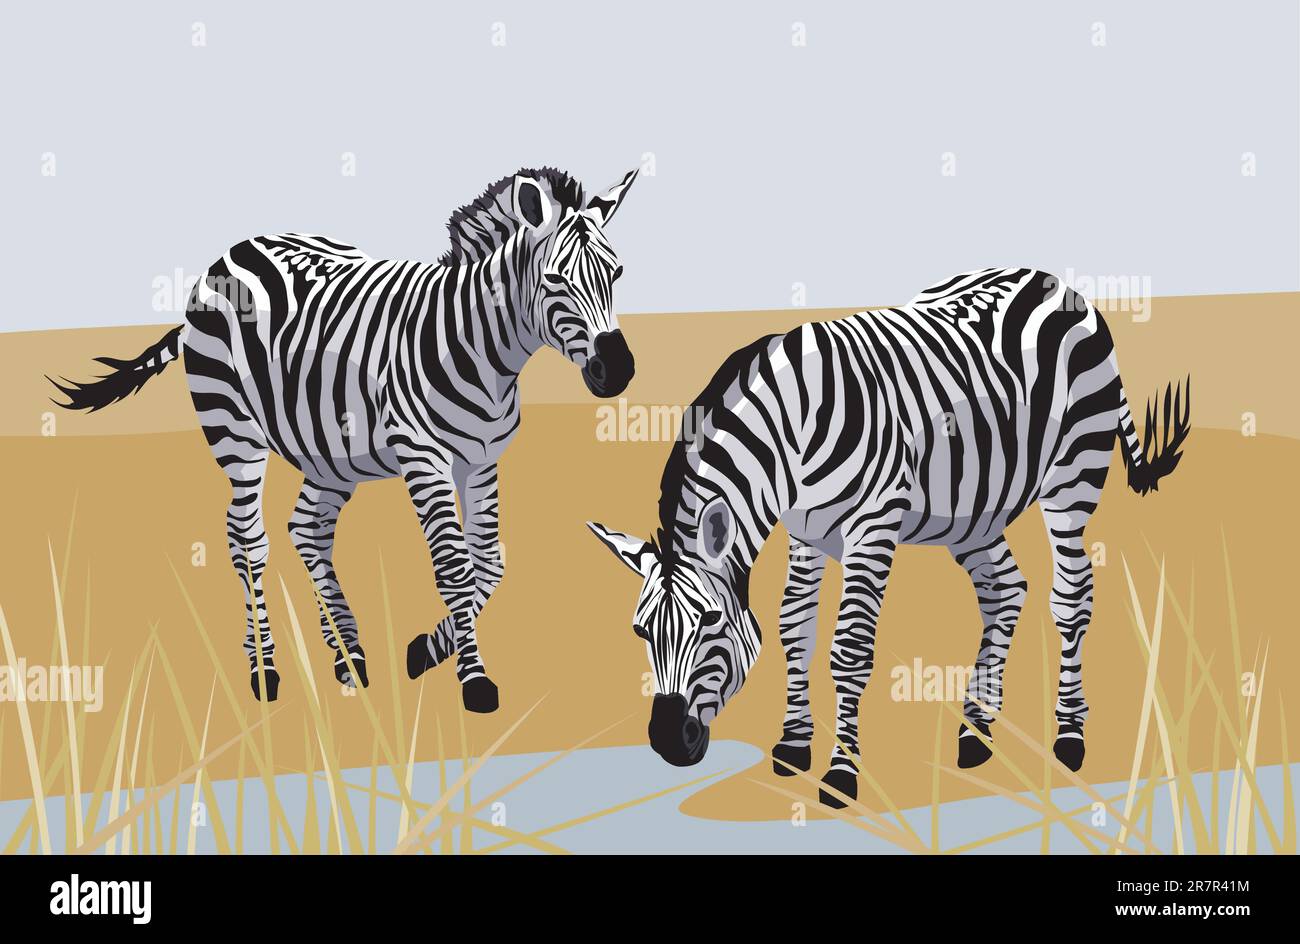 Abbildung mit Zebras in der Savanne Stock Vektor